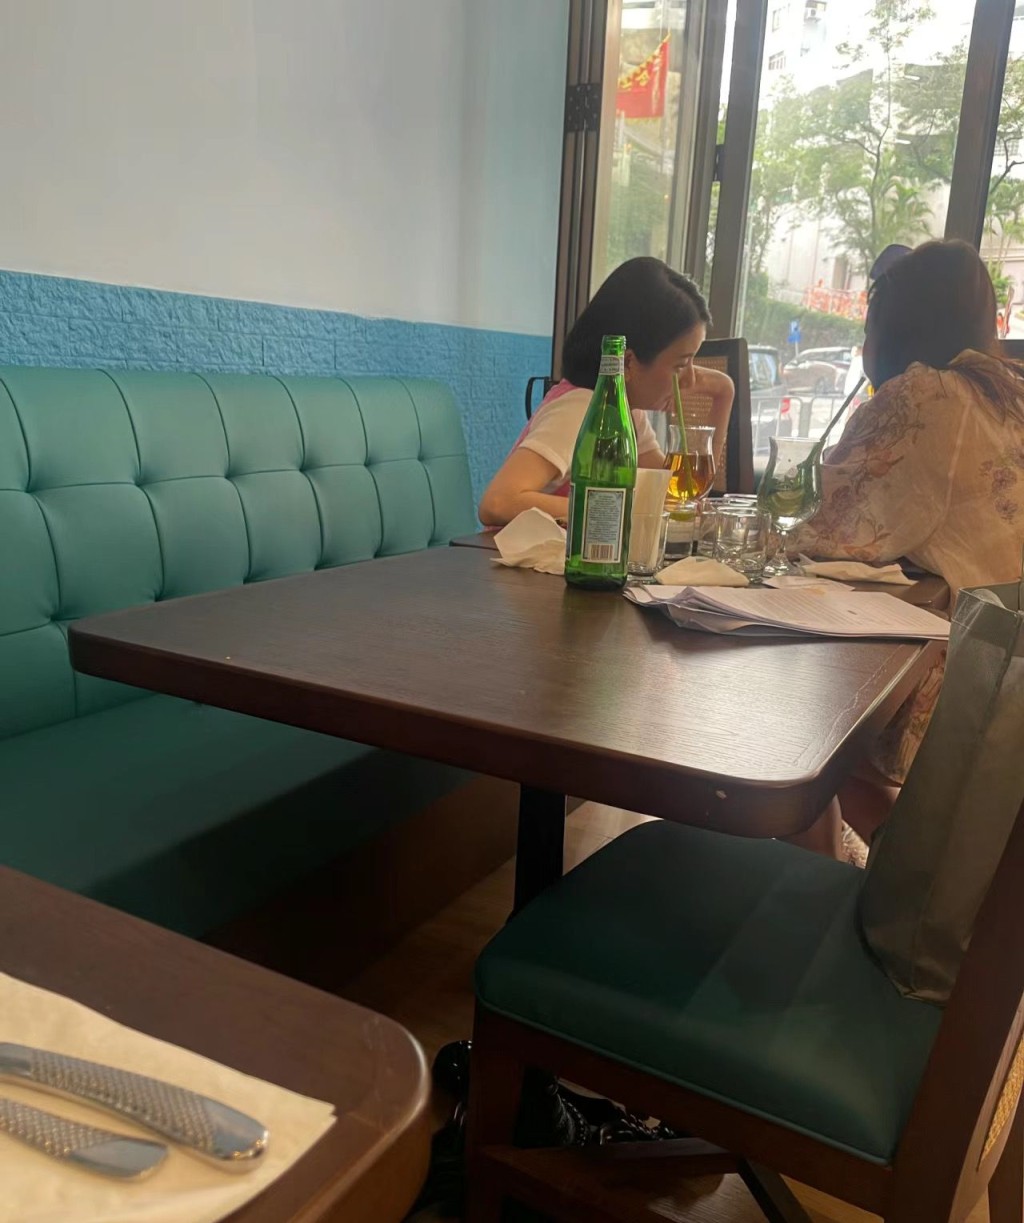 5月13日，有網民透露日前在跑馬地食飯偶遇方媛，可見兩人一臉嚴肅討論，加上桌面擺放着一堆文件，估計正在商討公事。